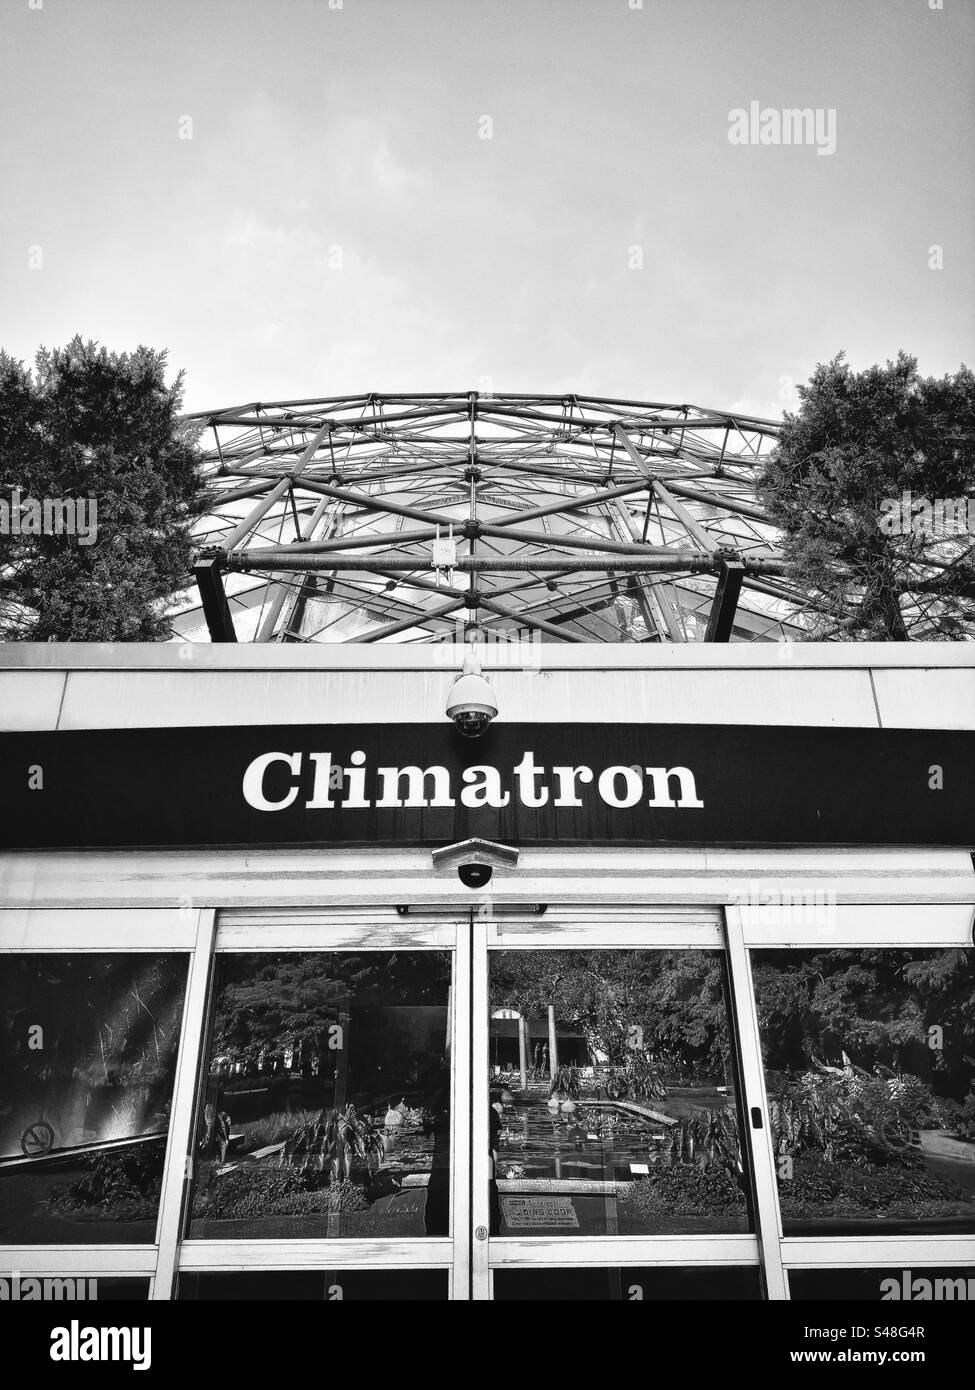 Climatron-Gebäude im Missouri Botanical Garden mit Schild über dem Eingang. Geodätische Kuppel. Schwarzweißfilter. Stockfoto